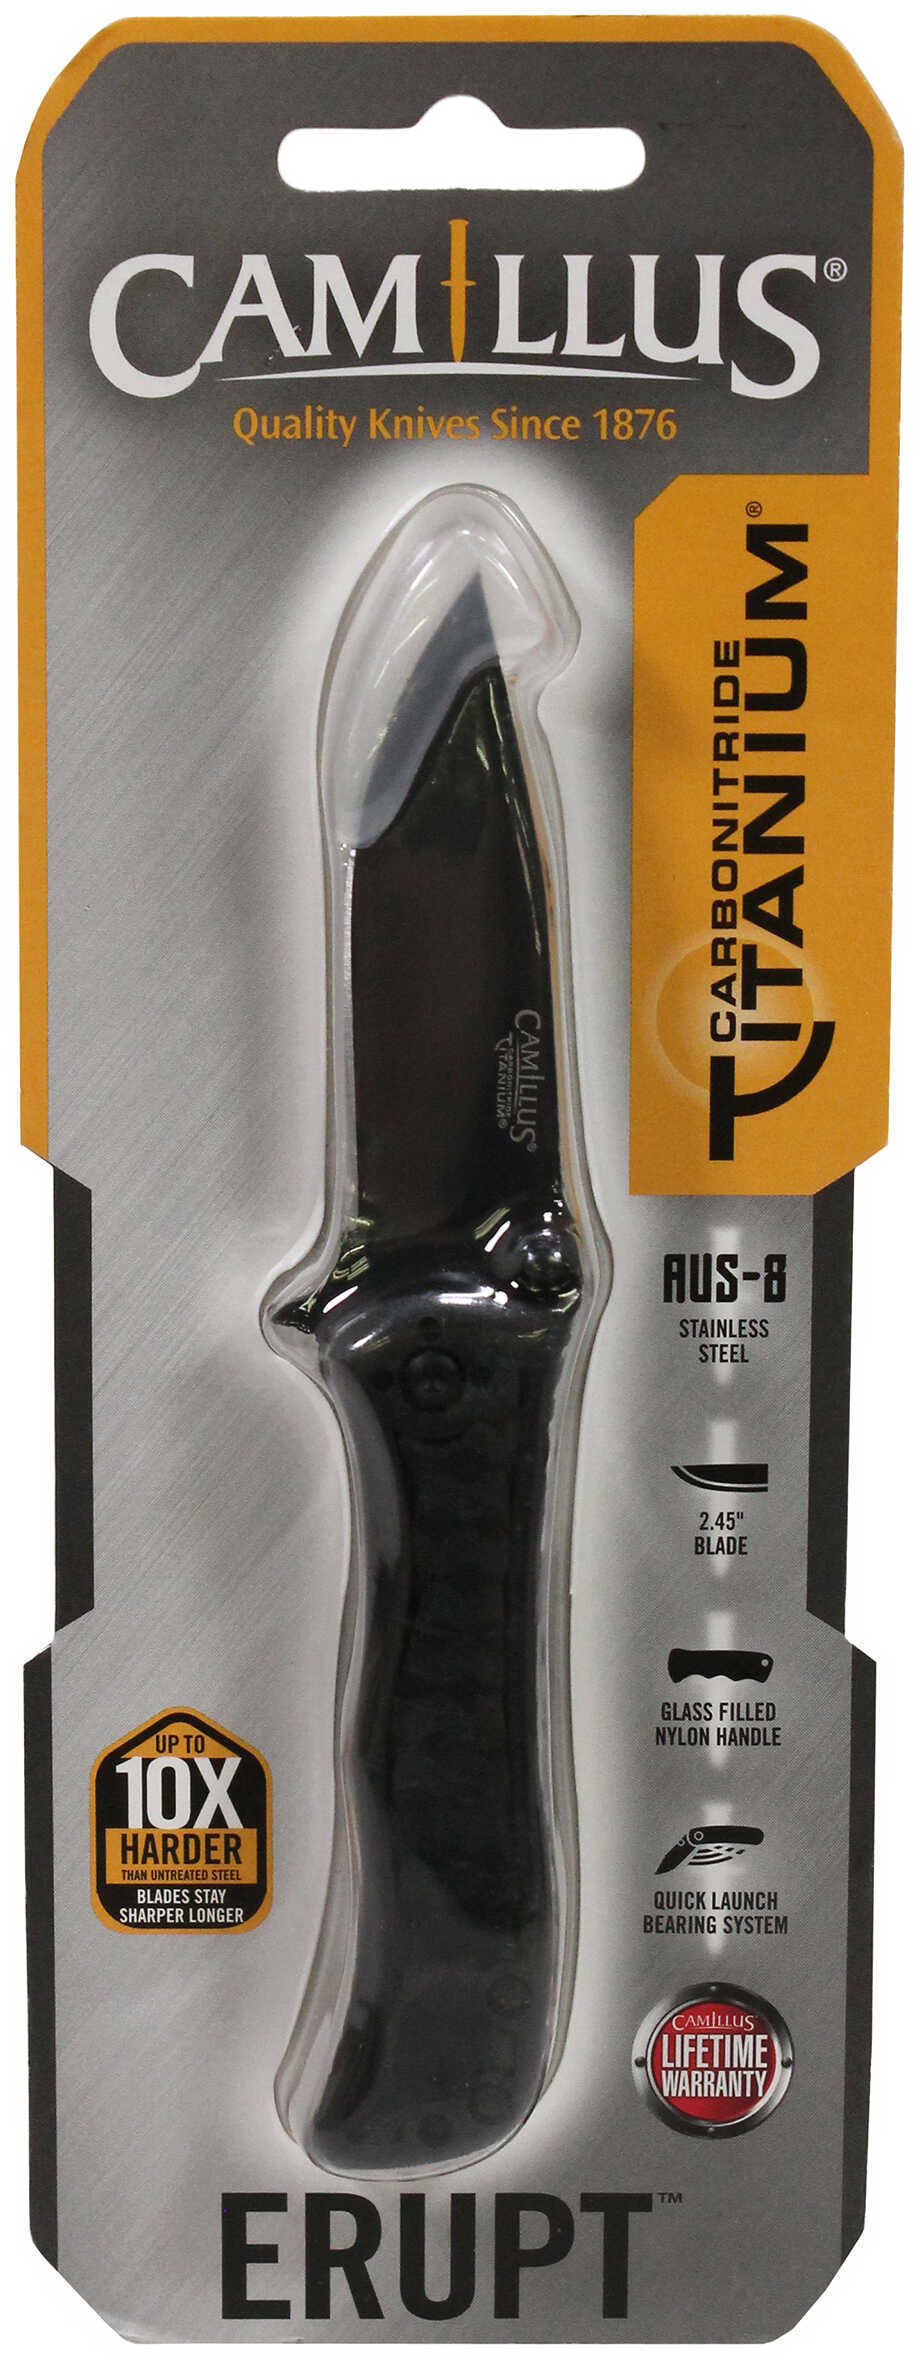 Camillus Erupt 5.5 inch Folding Knife 2.45 Blade